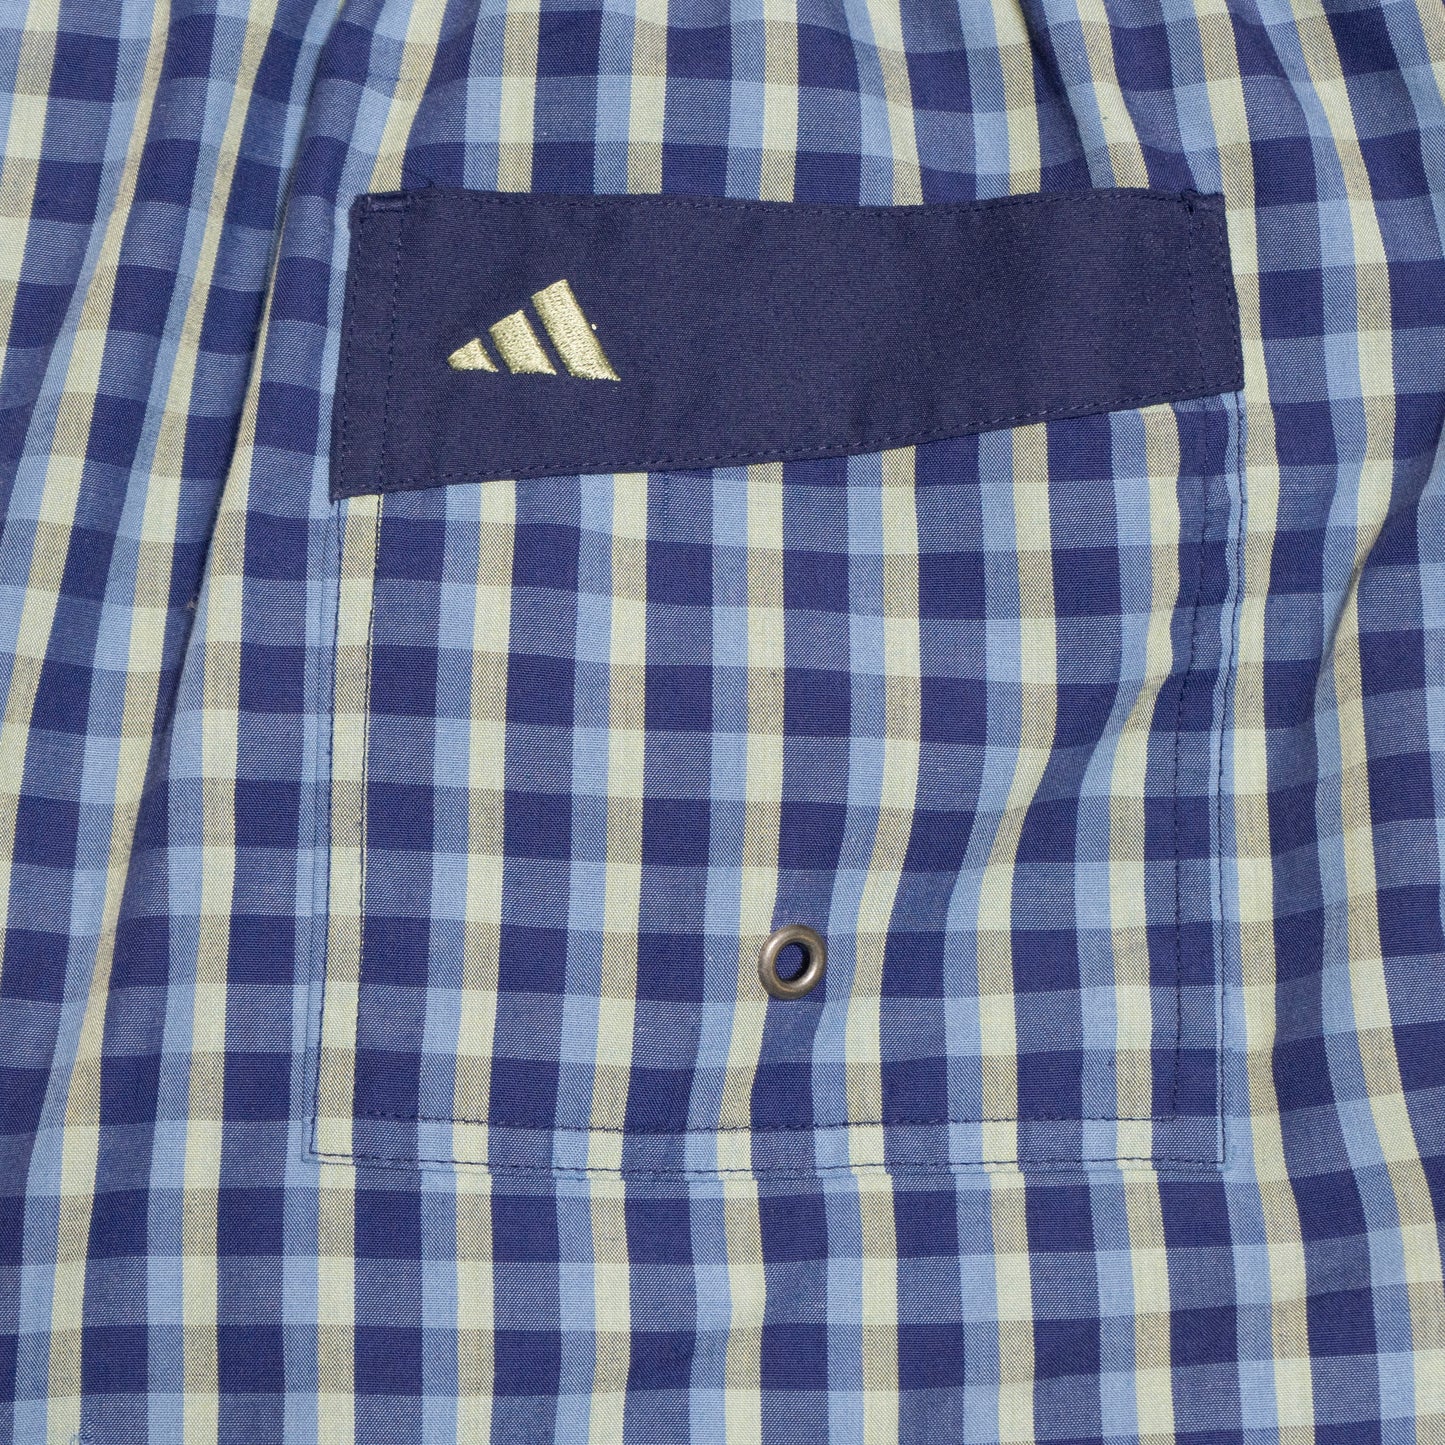 Adidas checkered Shorts, L